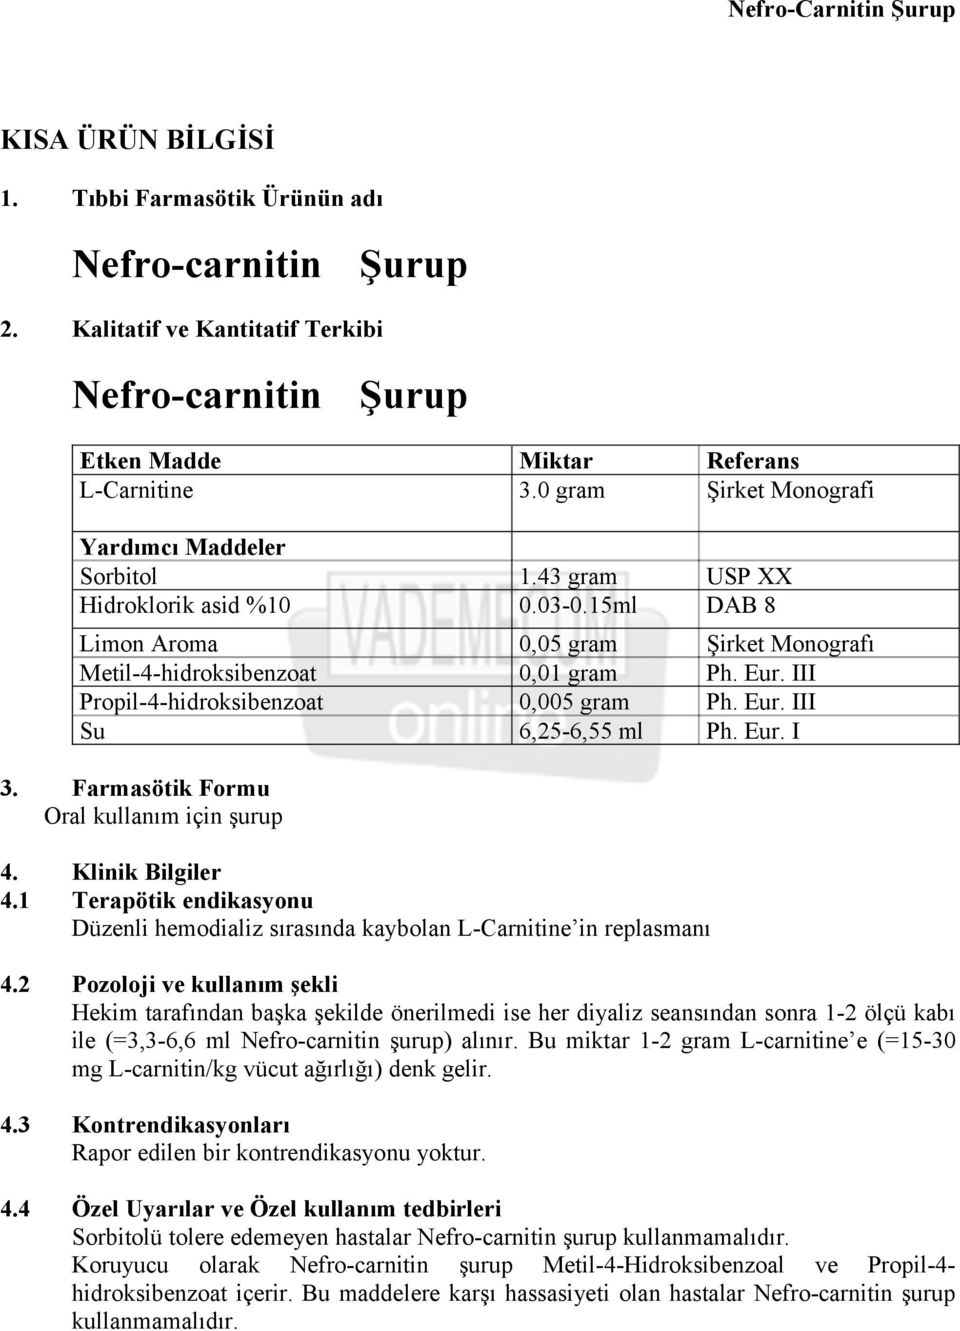 III Propil-4-hidroksibenzoat 0,005 gram Ph. Eur. III Su 6,25-6,55 ml Ph. Eur. I 3. Farmasötik Formu Oral kullanım için şurup 4. Klinik Bilgiler 4.